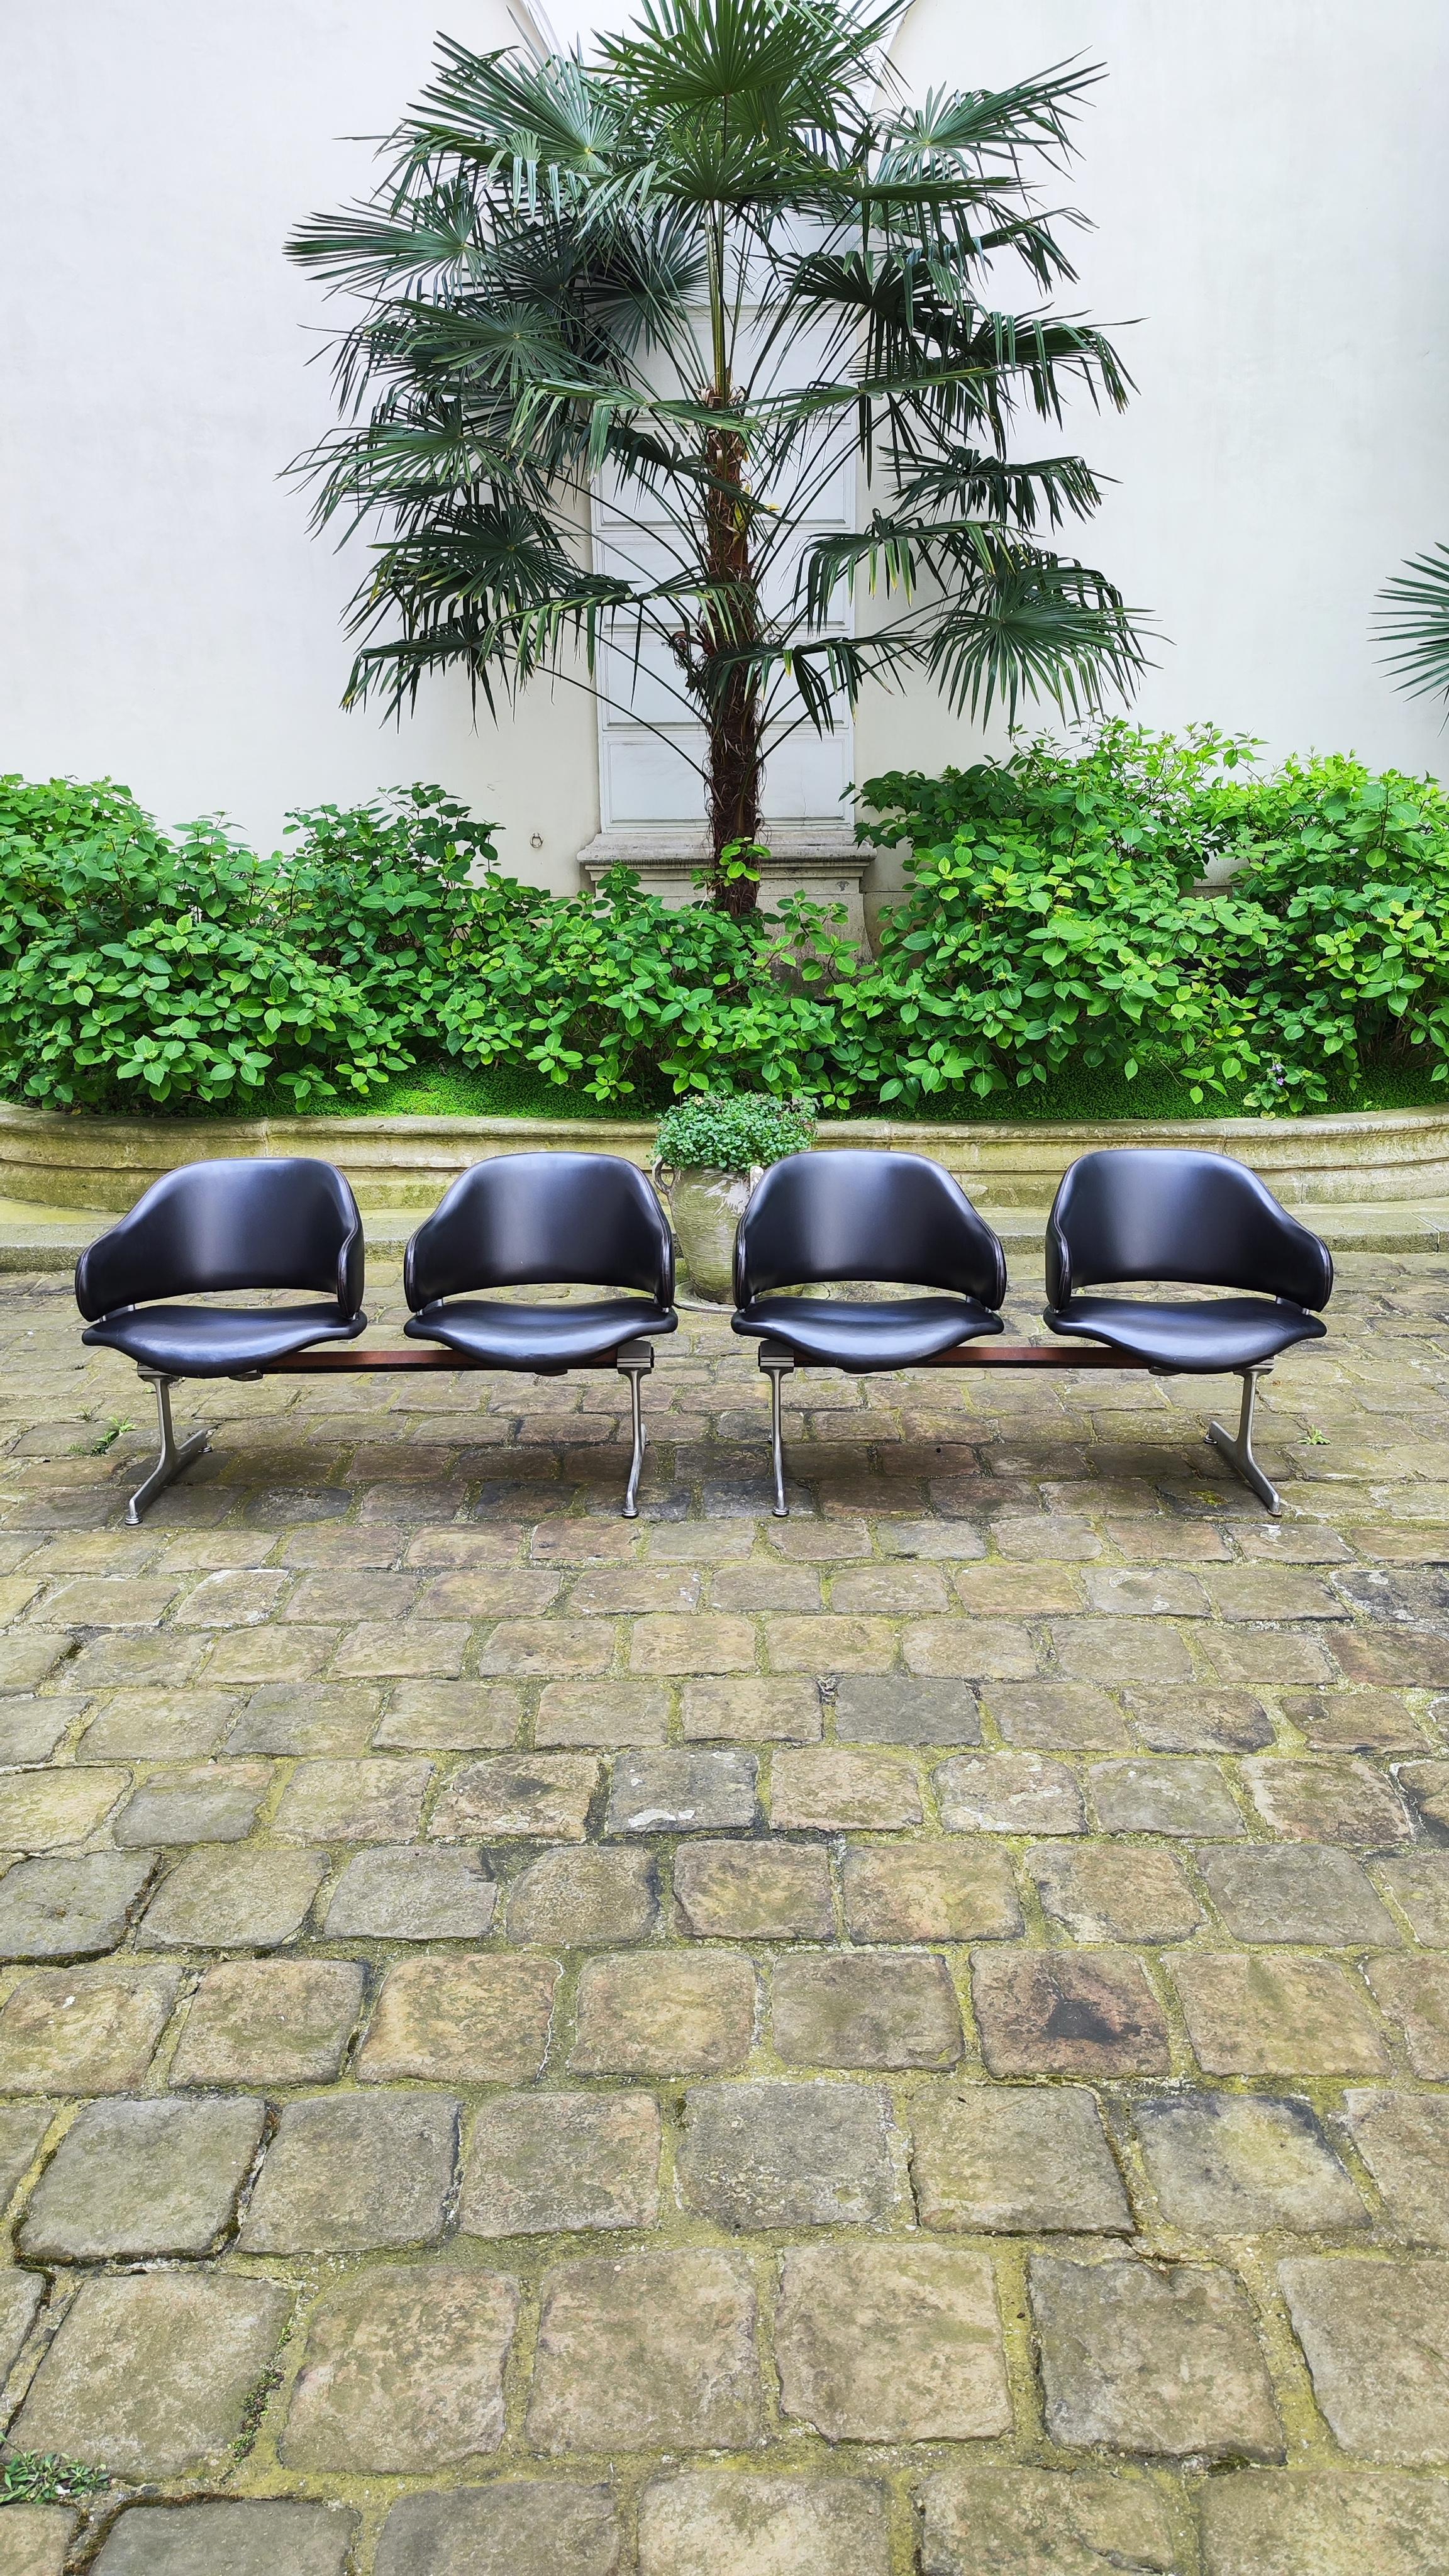 Deux chaises doubles, fauteuils banquettes de réception en cuir par Geoffrey Harcourt, Artifort, années 1960.
.
Deux disponibles.
.
Dimensions d'un fauteuil double :
130 cm de large
75 cm de haut
60 cm de profondeur.
.
En bon état, sauf le haut du